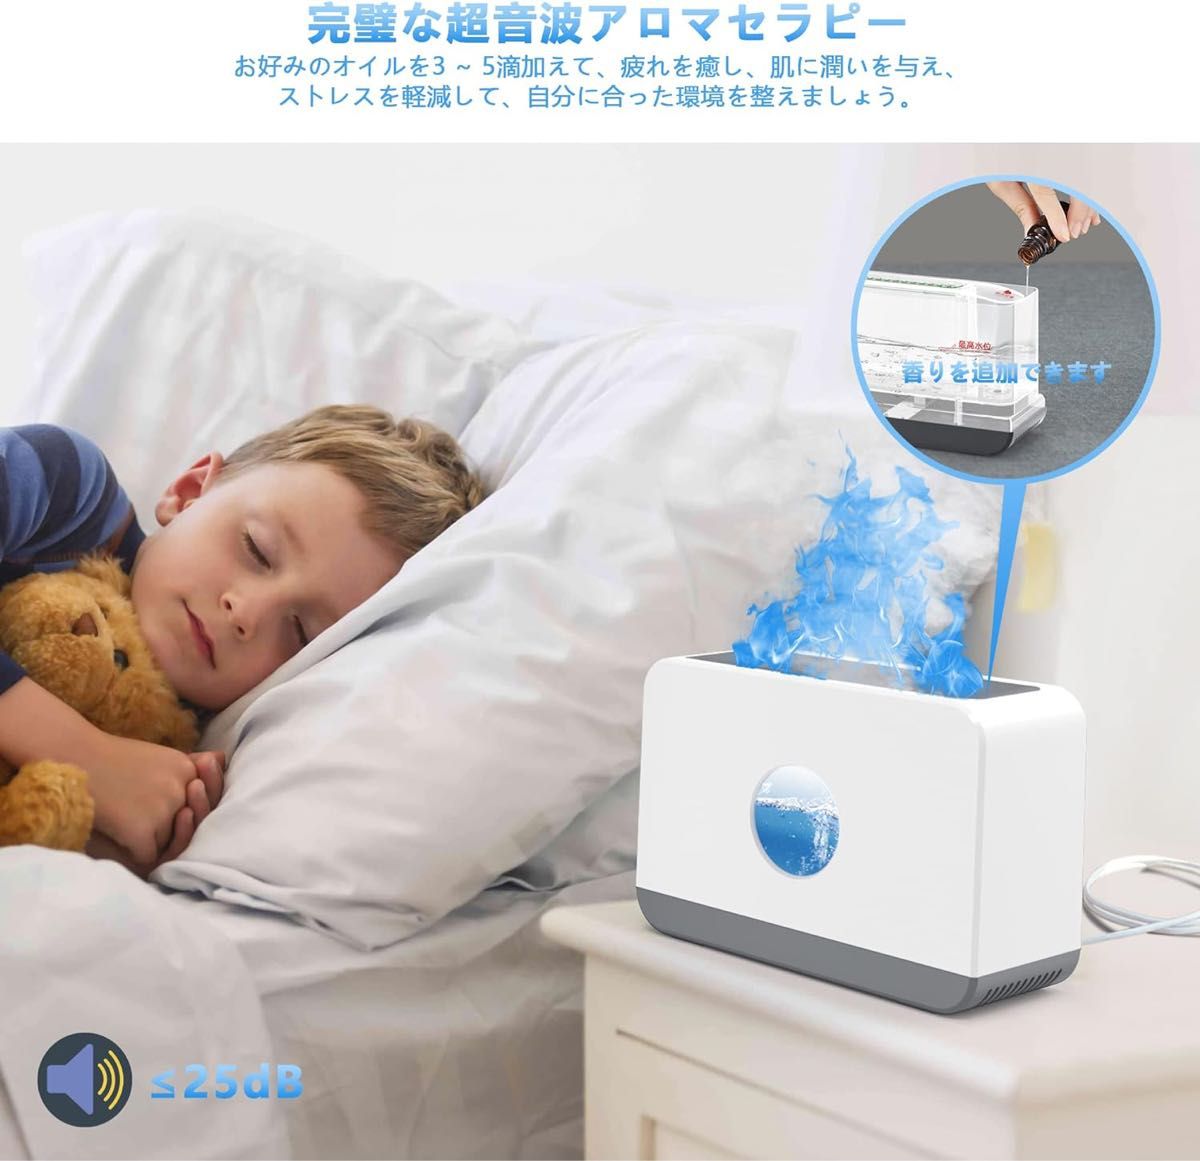 加湿器卓上 220ML上から給水 喉の乾燥予防 静音 炎アロマディフューザータイミング機能睡眠モード空焚き防止 LEDライト3段階